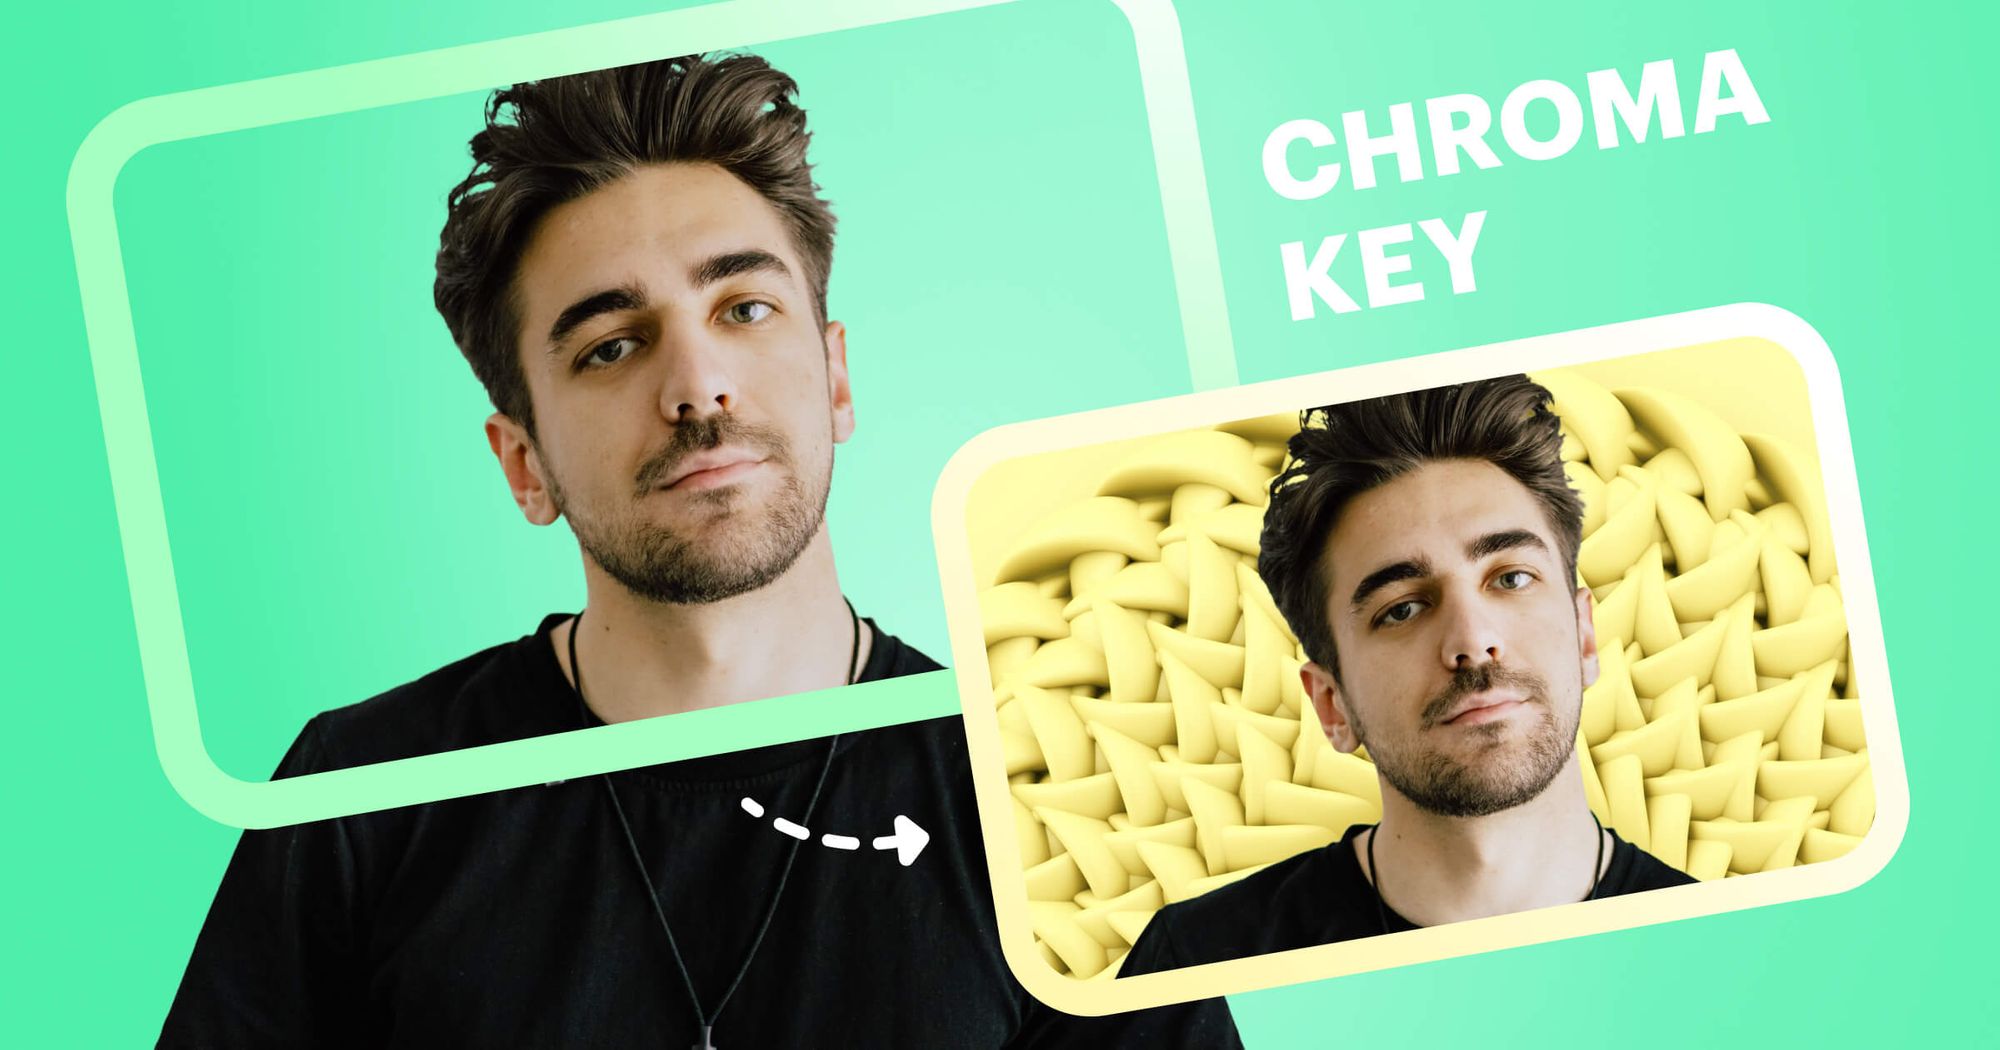 Chroma Key là một công nghệ hữu ích cho phép bạn thay đổi phông nền trong ảnh và video. Với sự giúp đỡ của Chroma Key, bạn có thể tạo ra những hình ảnh, video độc đáo và ấn tượng, giúp gia tăng sự chuyên nghiệp cho công việc sáng tạo của mình. Xem ngay hình ảnh liên quan!